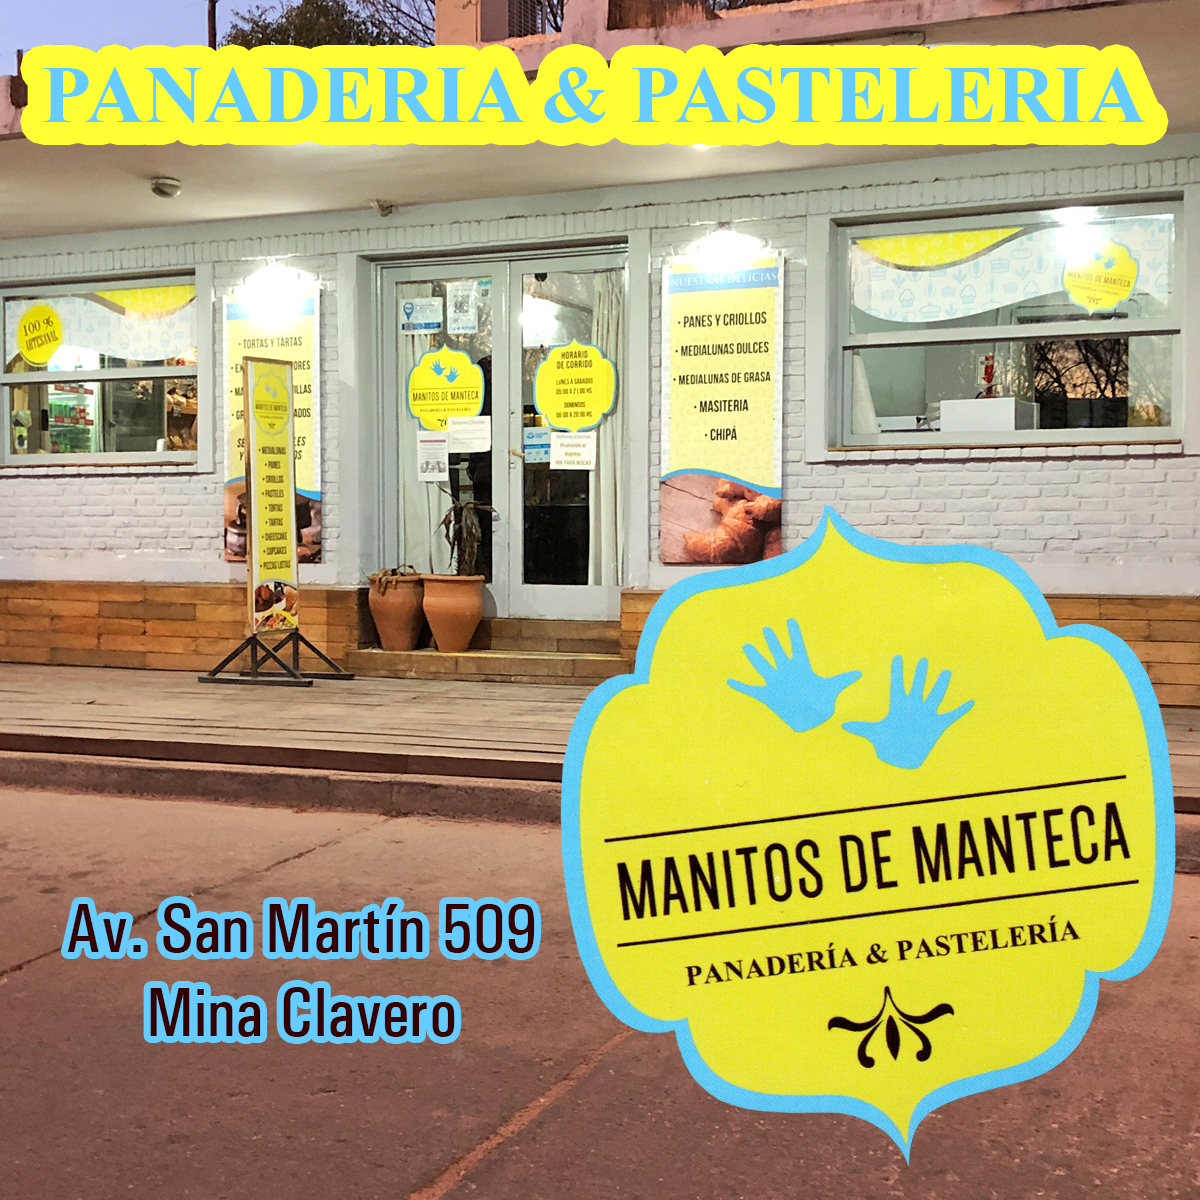 Manitos de Manteca - Mina Clavero - Panaderia y pastelería. Exclusivos alfajores. Grisines, libritos, medialunas saladas y dulces, prepizzas, café al paso.